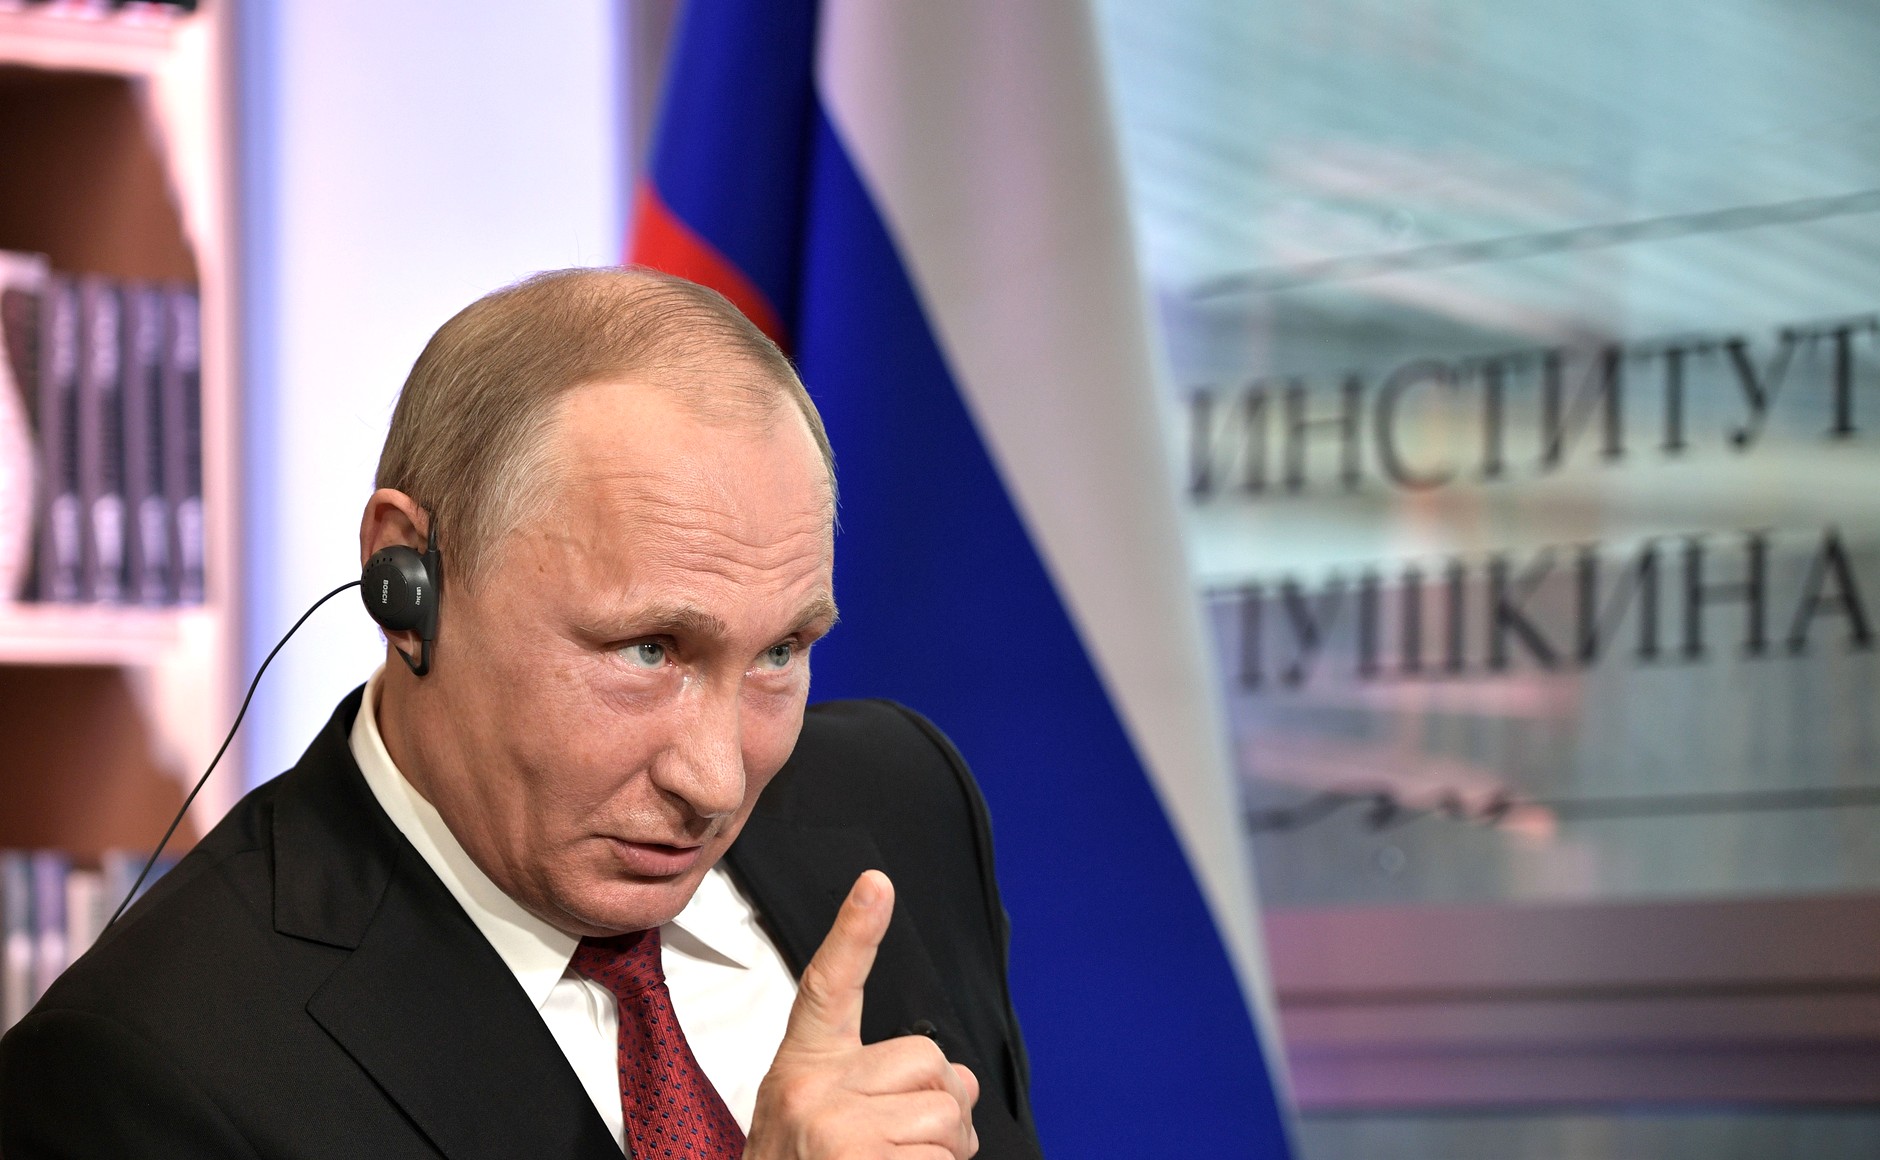 Putin mengatakan bahwa daripada terus-terusan menyebarkan mitos semacam itu, lebih baik Barat bekerja sama dengan Rusia di setiap level.